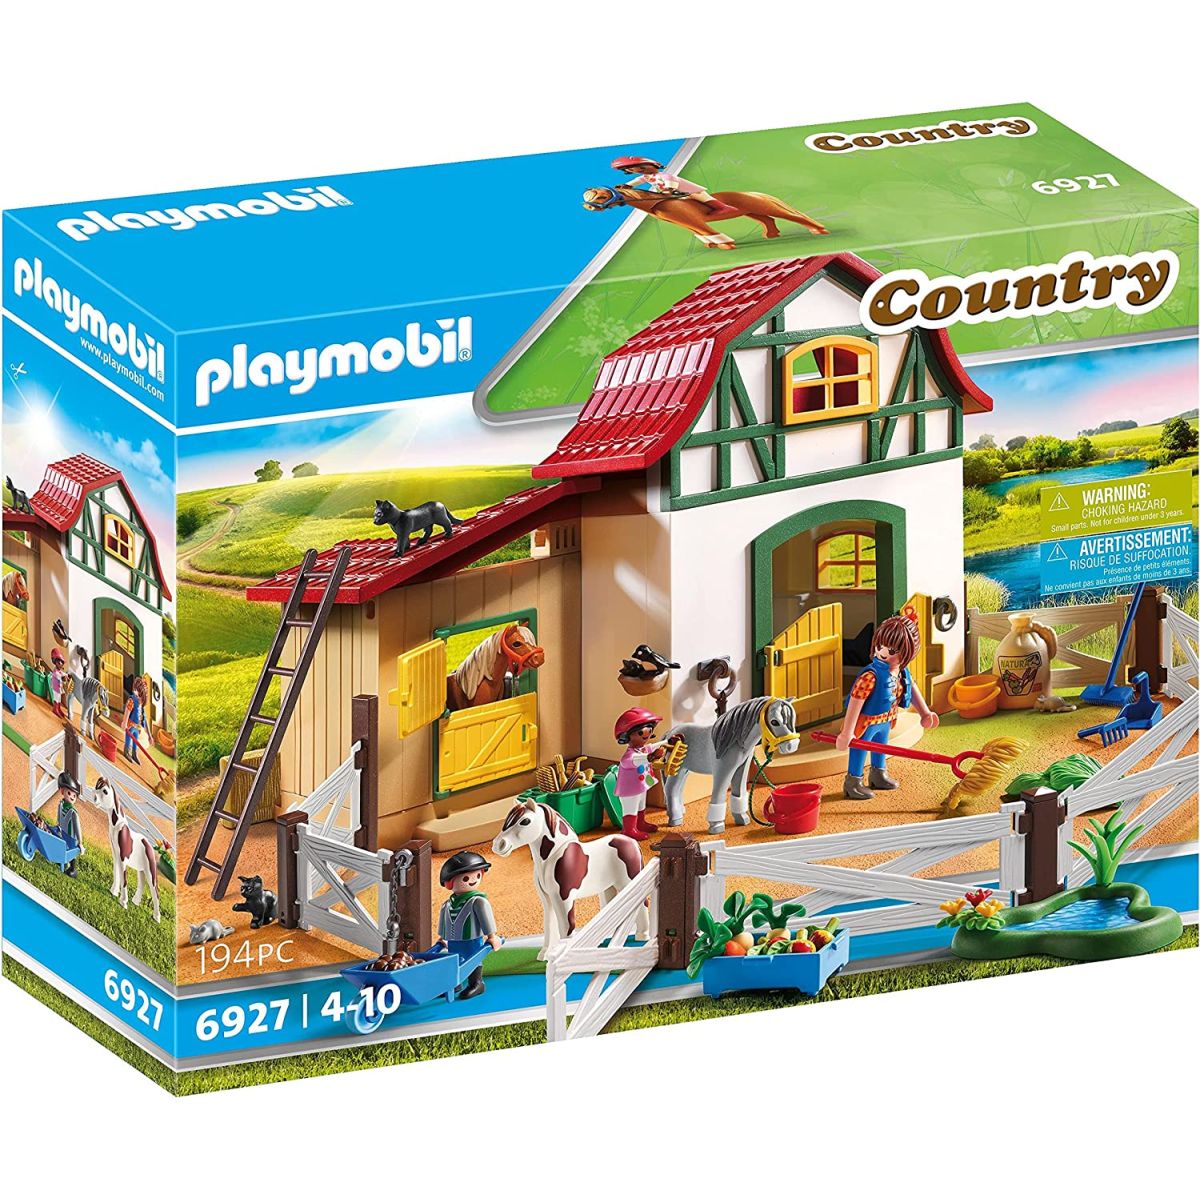 Soldes Playmobil - Promos et réductions janvier 2024